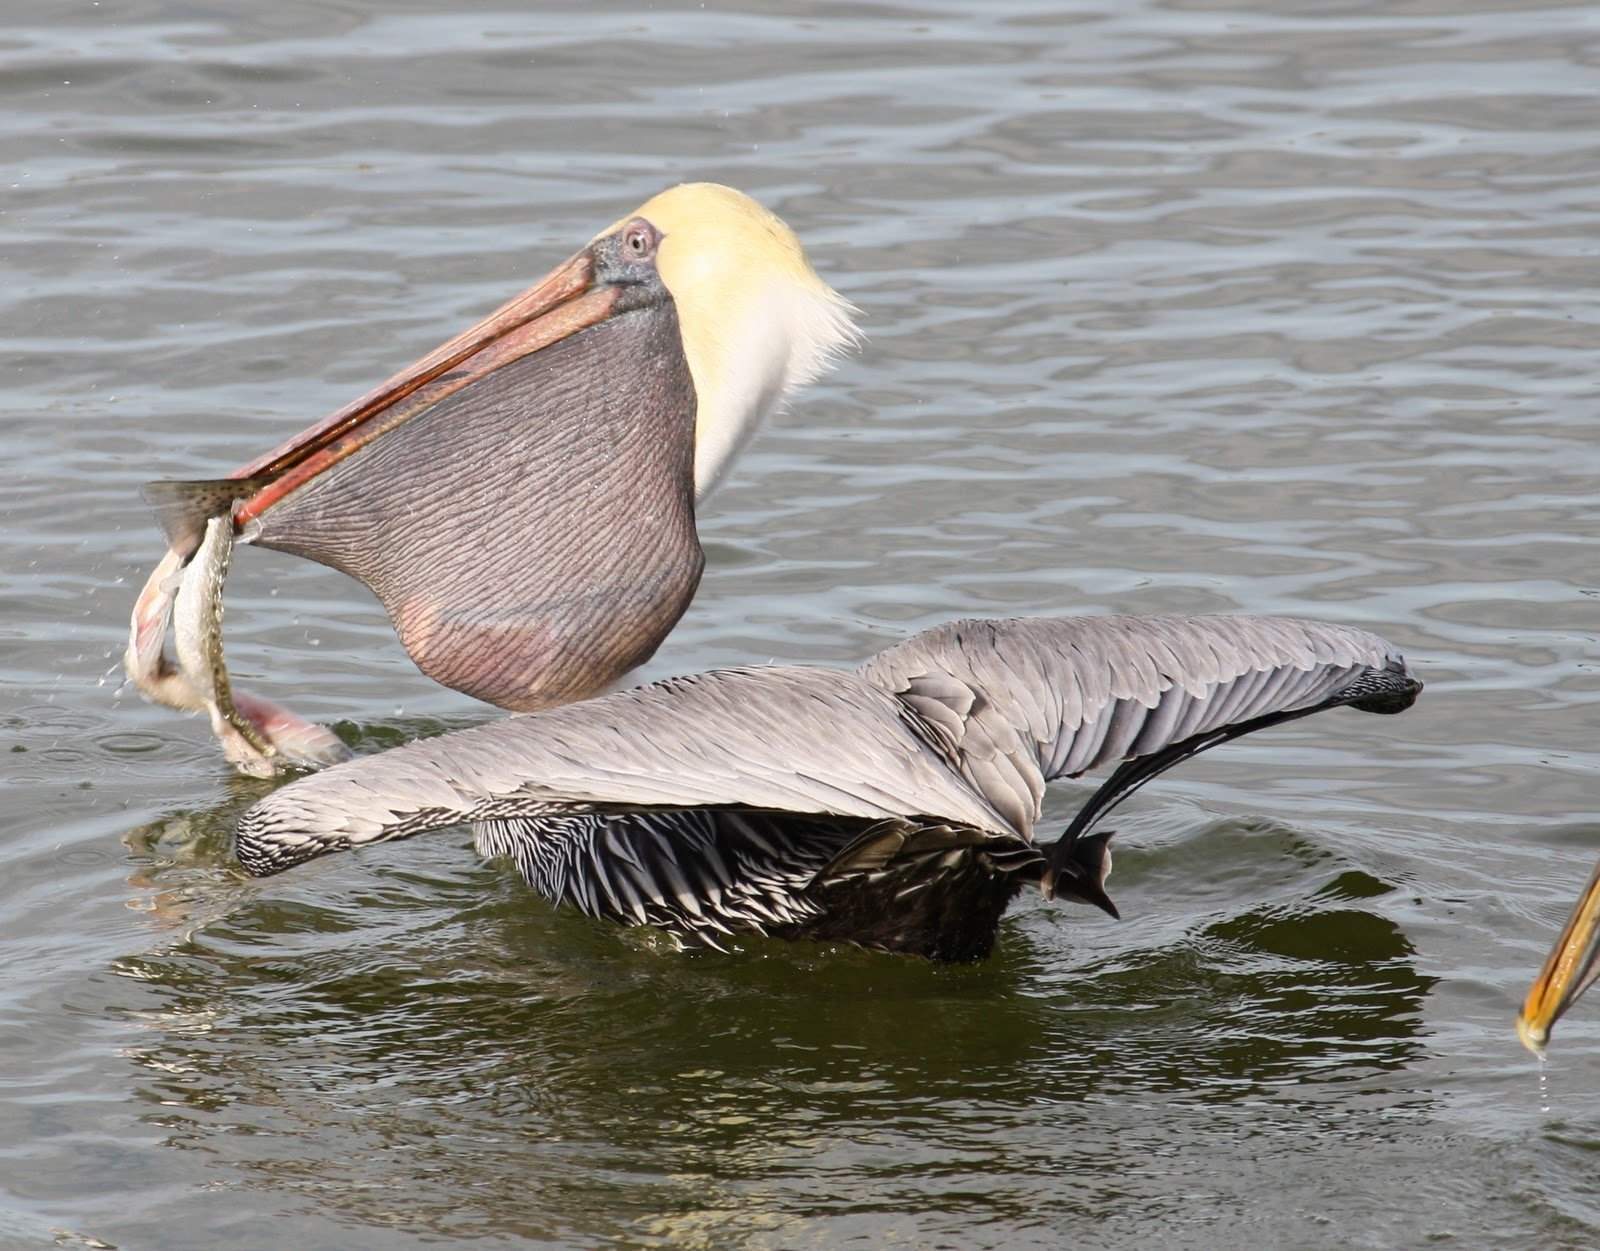 Пеликан ловит рыбу. Пеликан мешконос птица. Большерот рыба-Пеликан. Клюв пеликана. Пеликан питается рыбой.